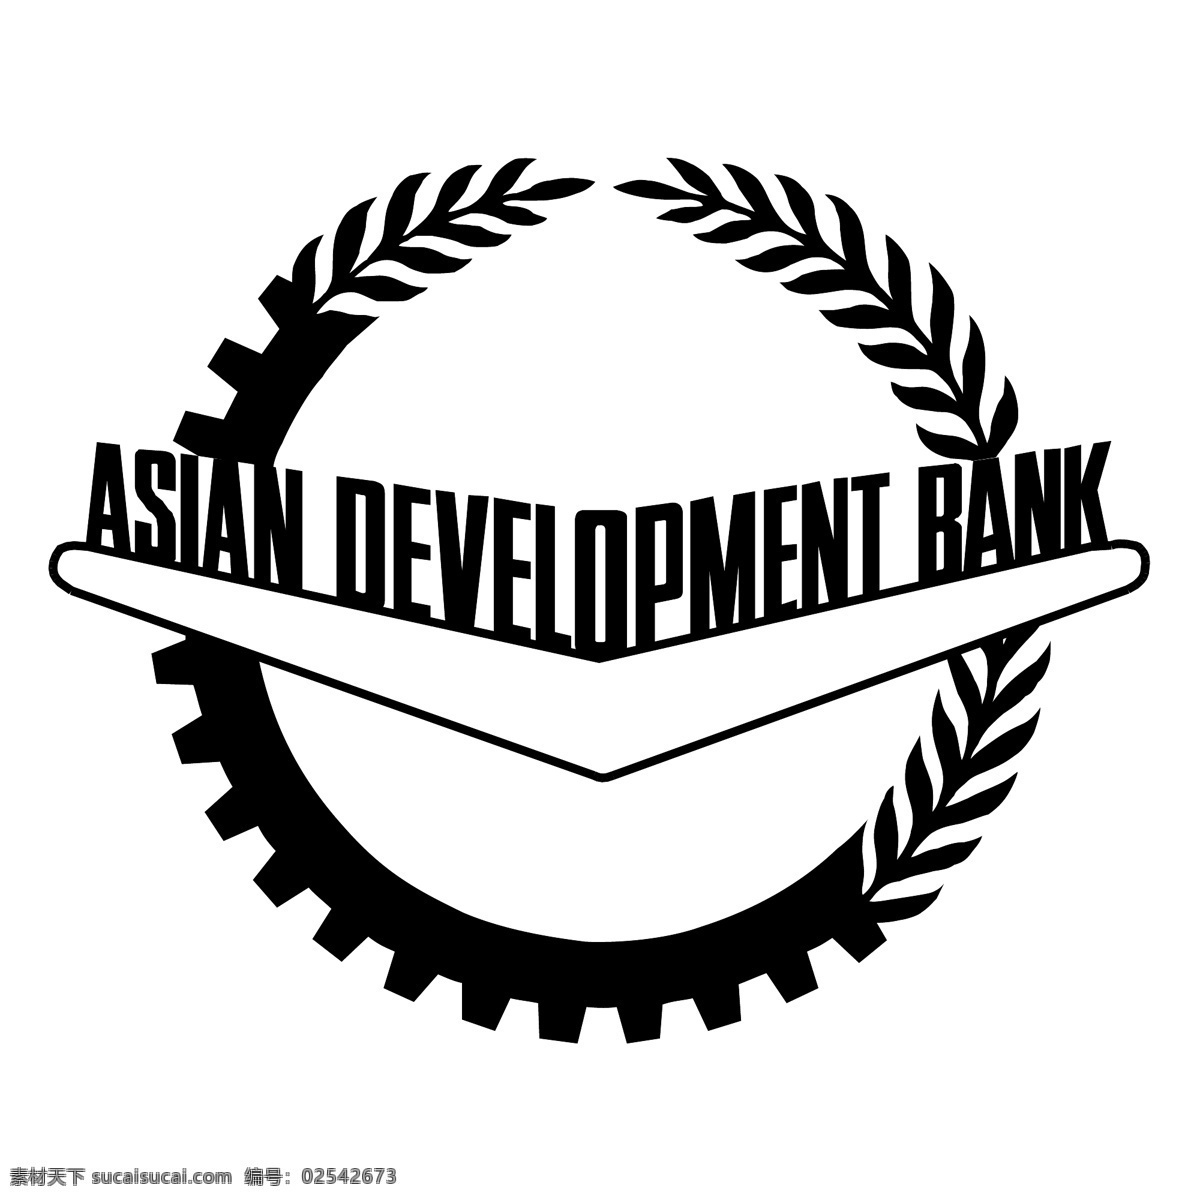 亚洲开发银行 发展 建设银行 亚洲 中国银行 亚洲的发展 发展银行 中国 开发 银行 载体 中国农业发展银行 矢量开发银行 矢量 矢量图 建筑家居